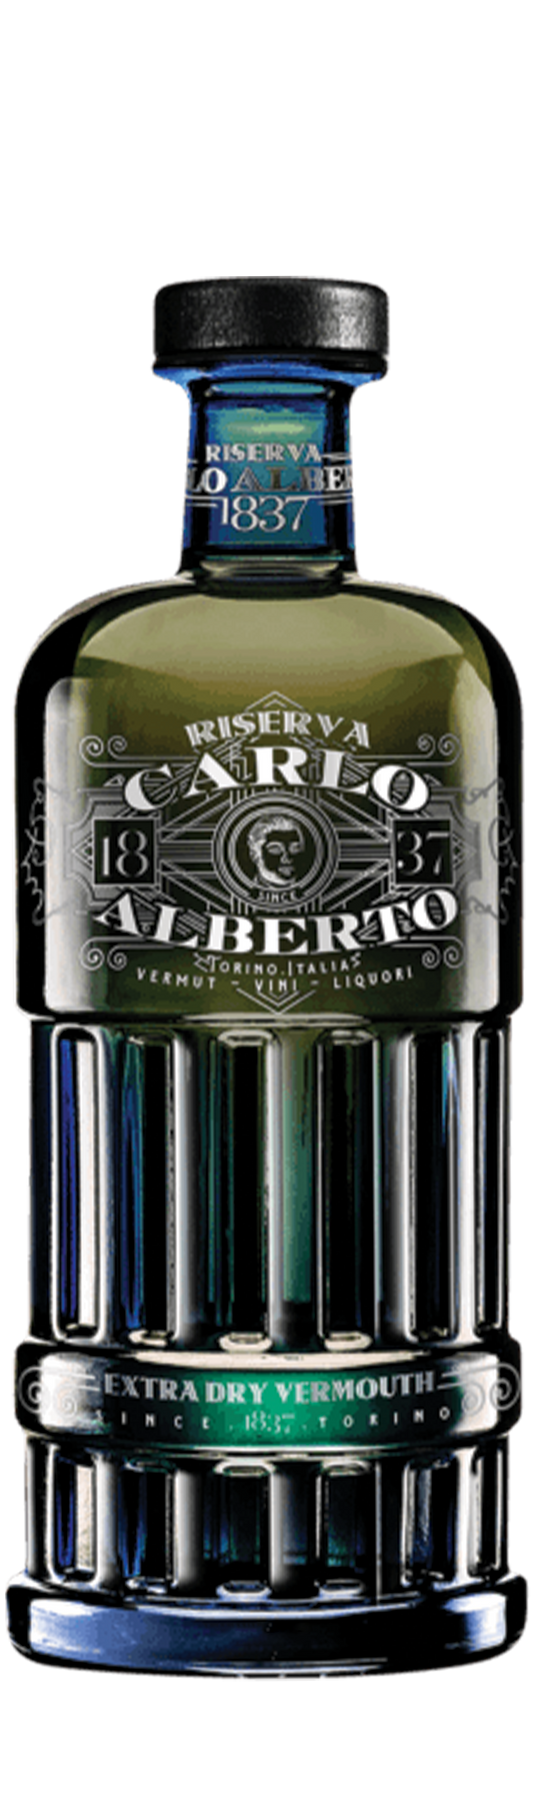 Carlo Alberto Riserva Dry 18% 75cl Vermouth di Torino